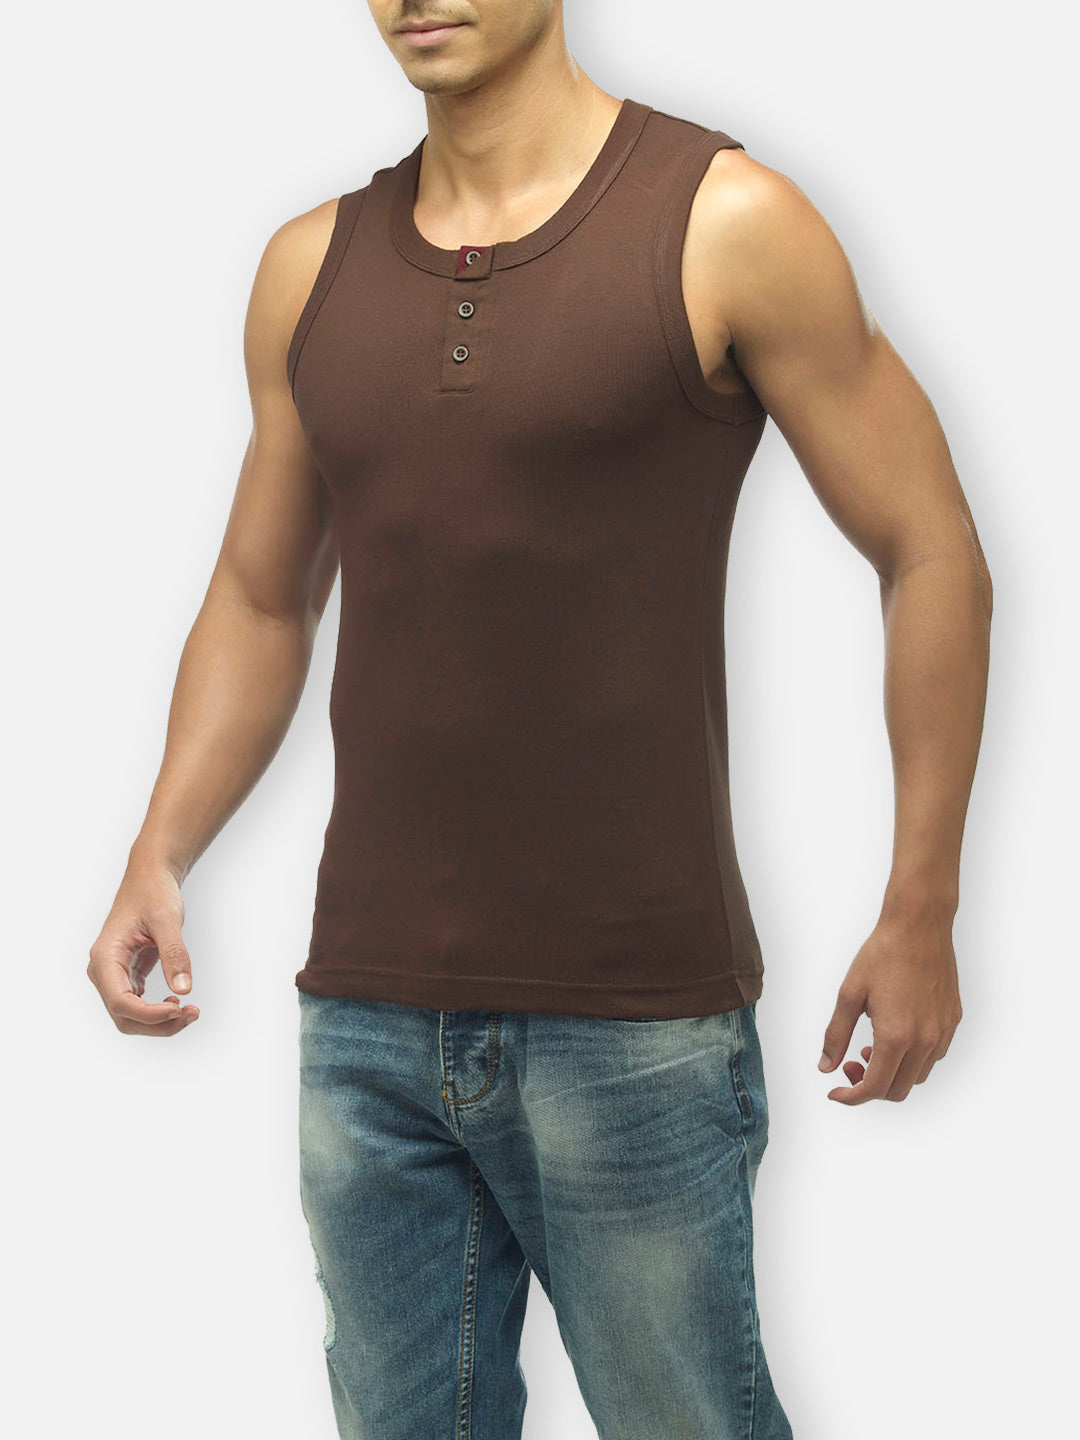 Zoiro Men&#39;s Cotton Solid Vest